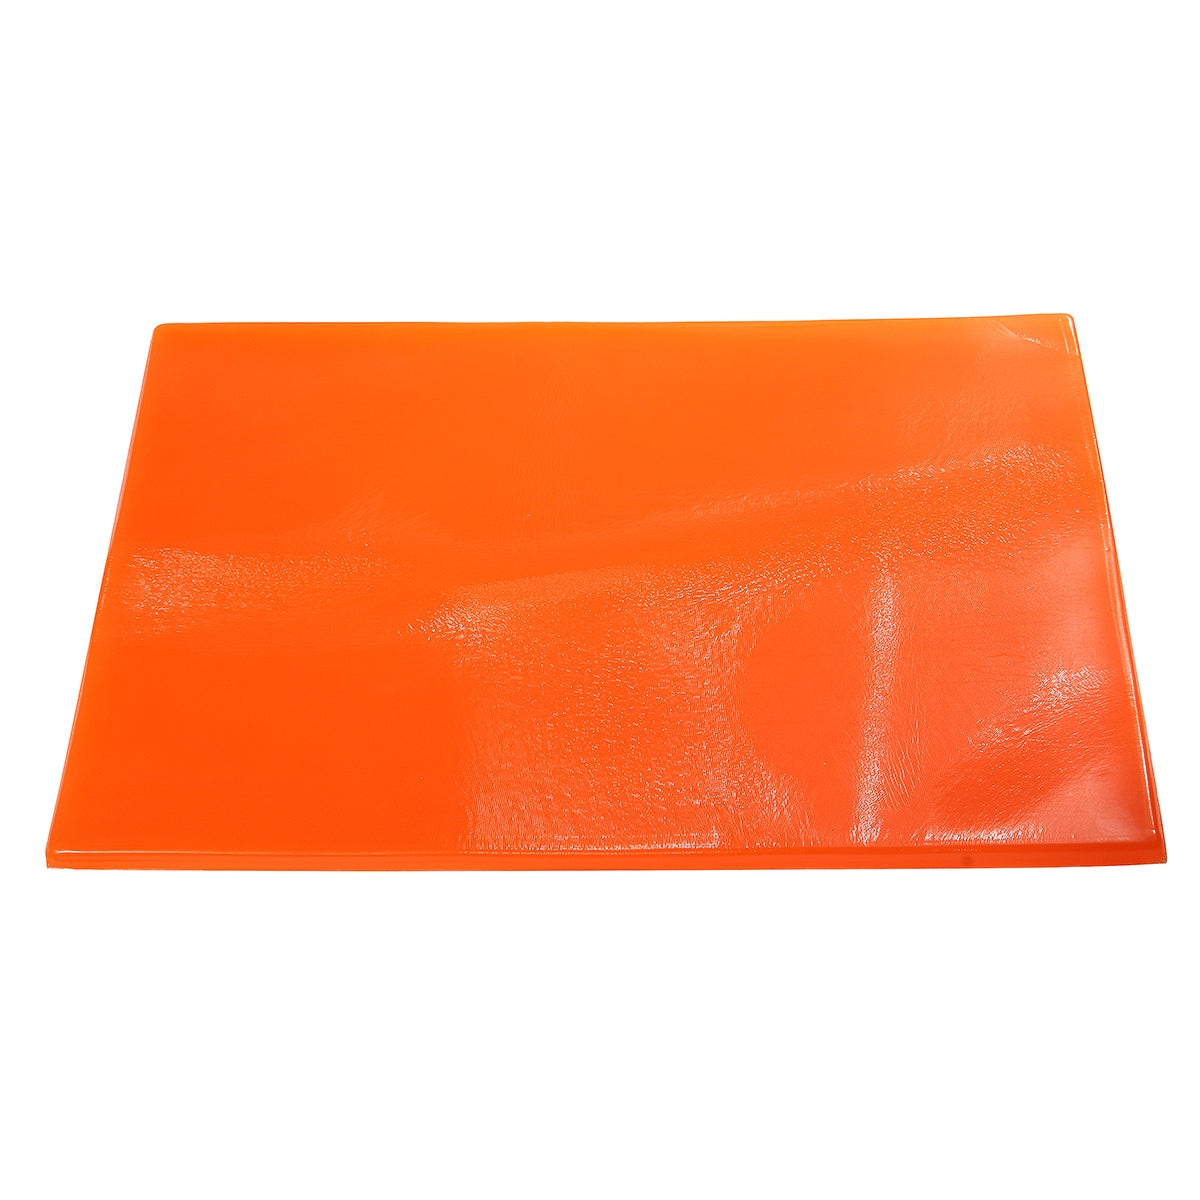 Orange Red Cool Seat Cushion Gel Pad Shock Absorption Mat Comfortable Soft Orange Motorcycle ATV Office